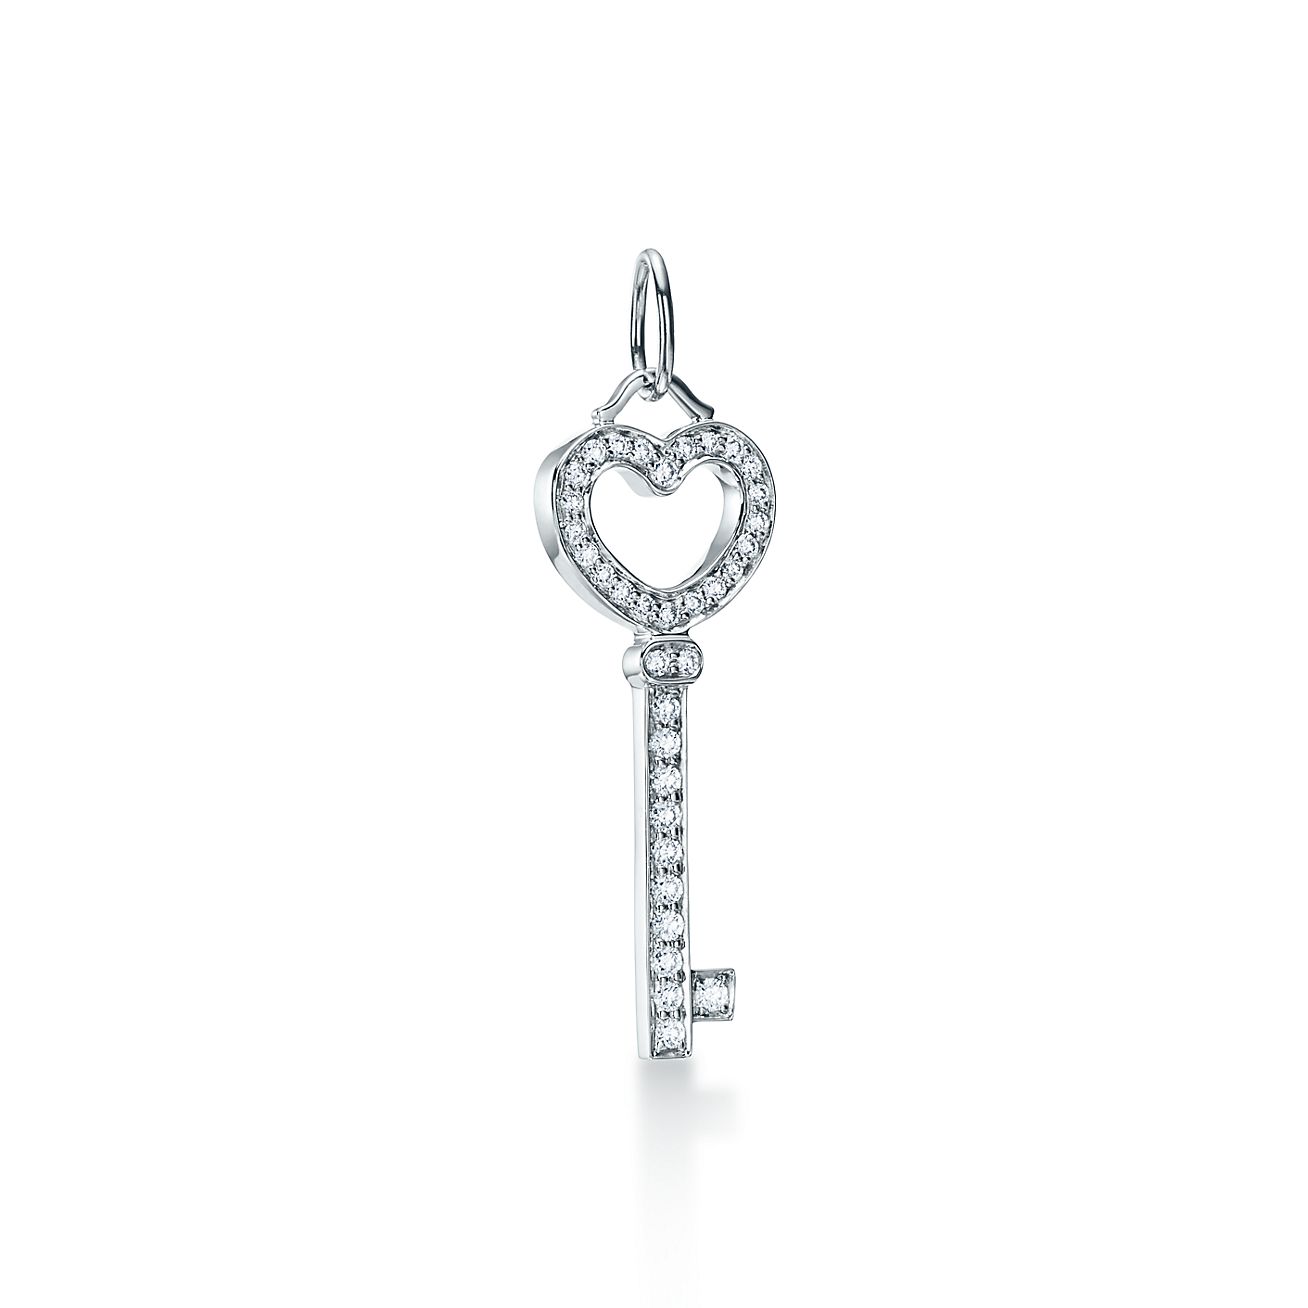 Tiffany Keys heart key pendant in 